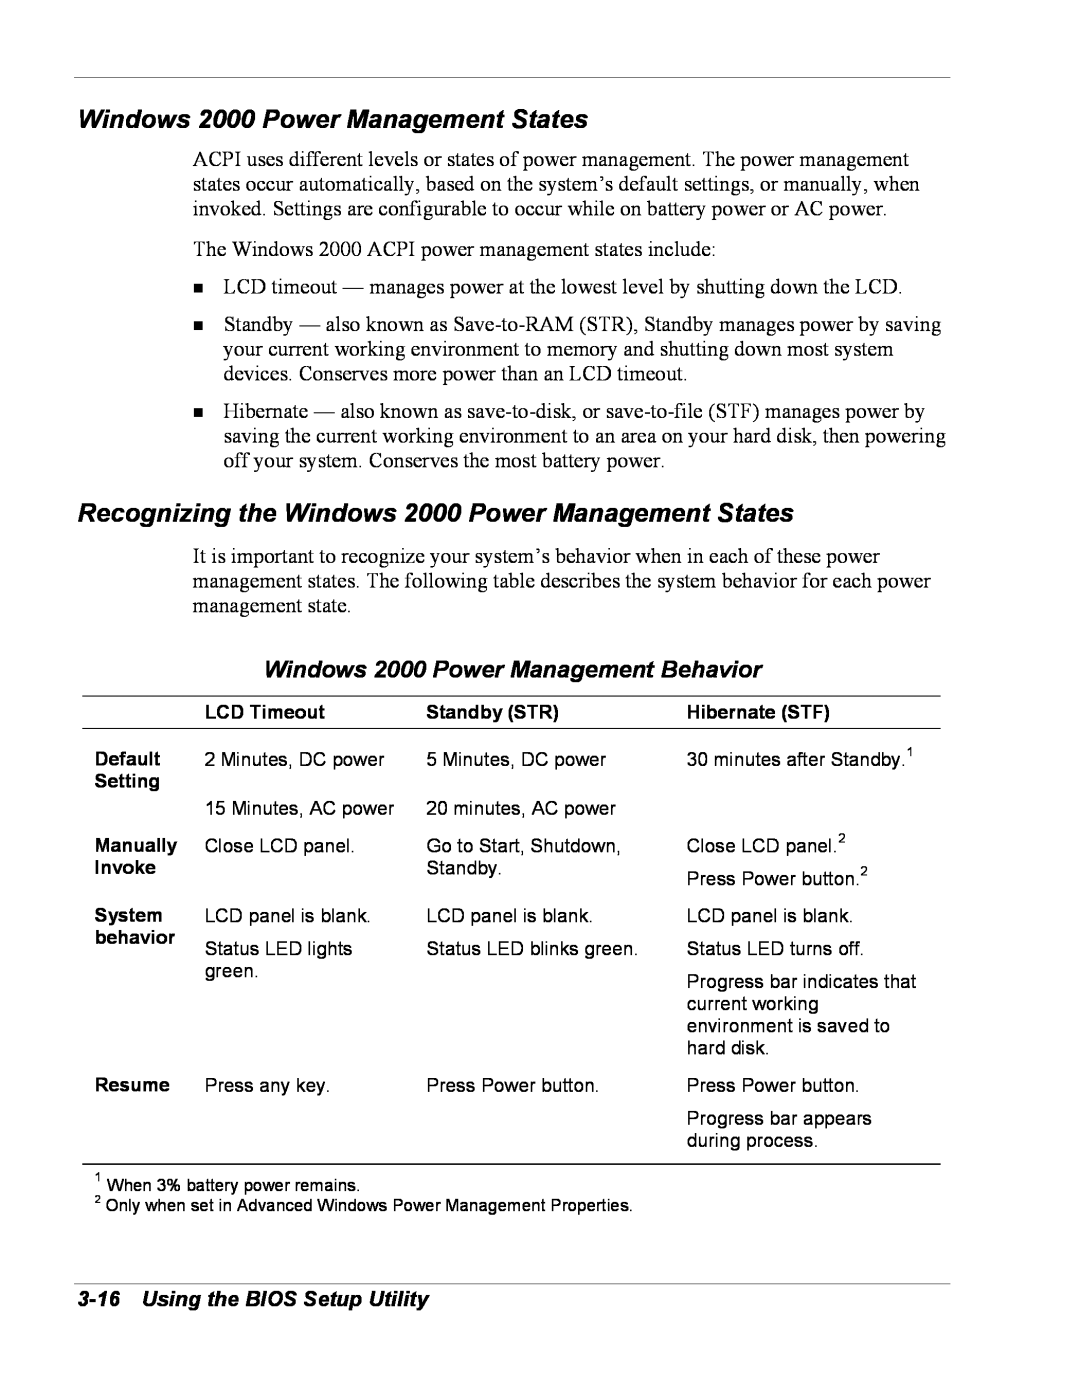 NEC Versa Series manual Recognizing the Windows 2000 Power Management States, Windows 2000 Power Management Behavior 